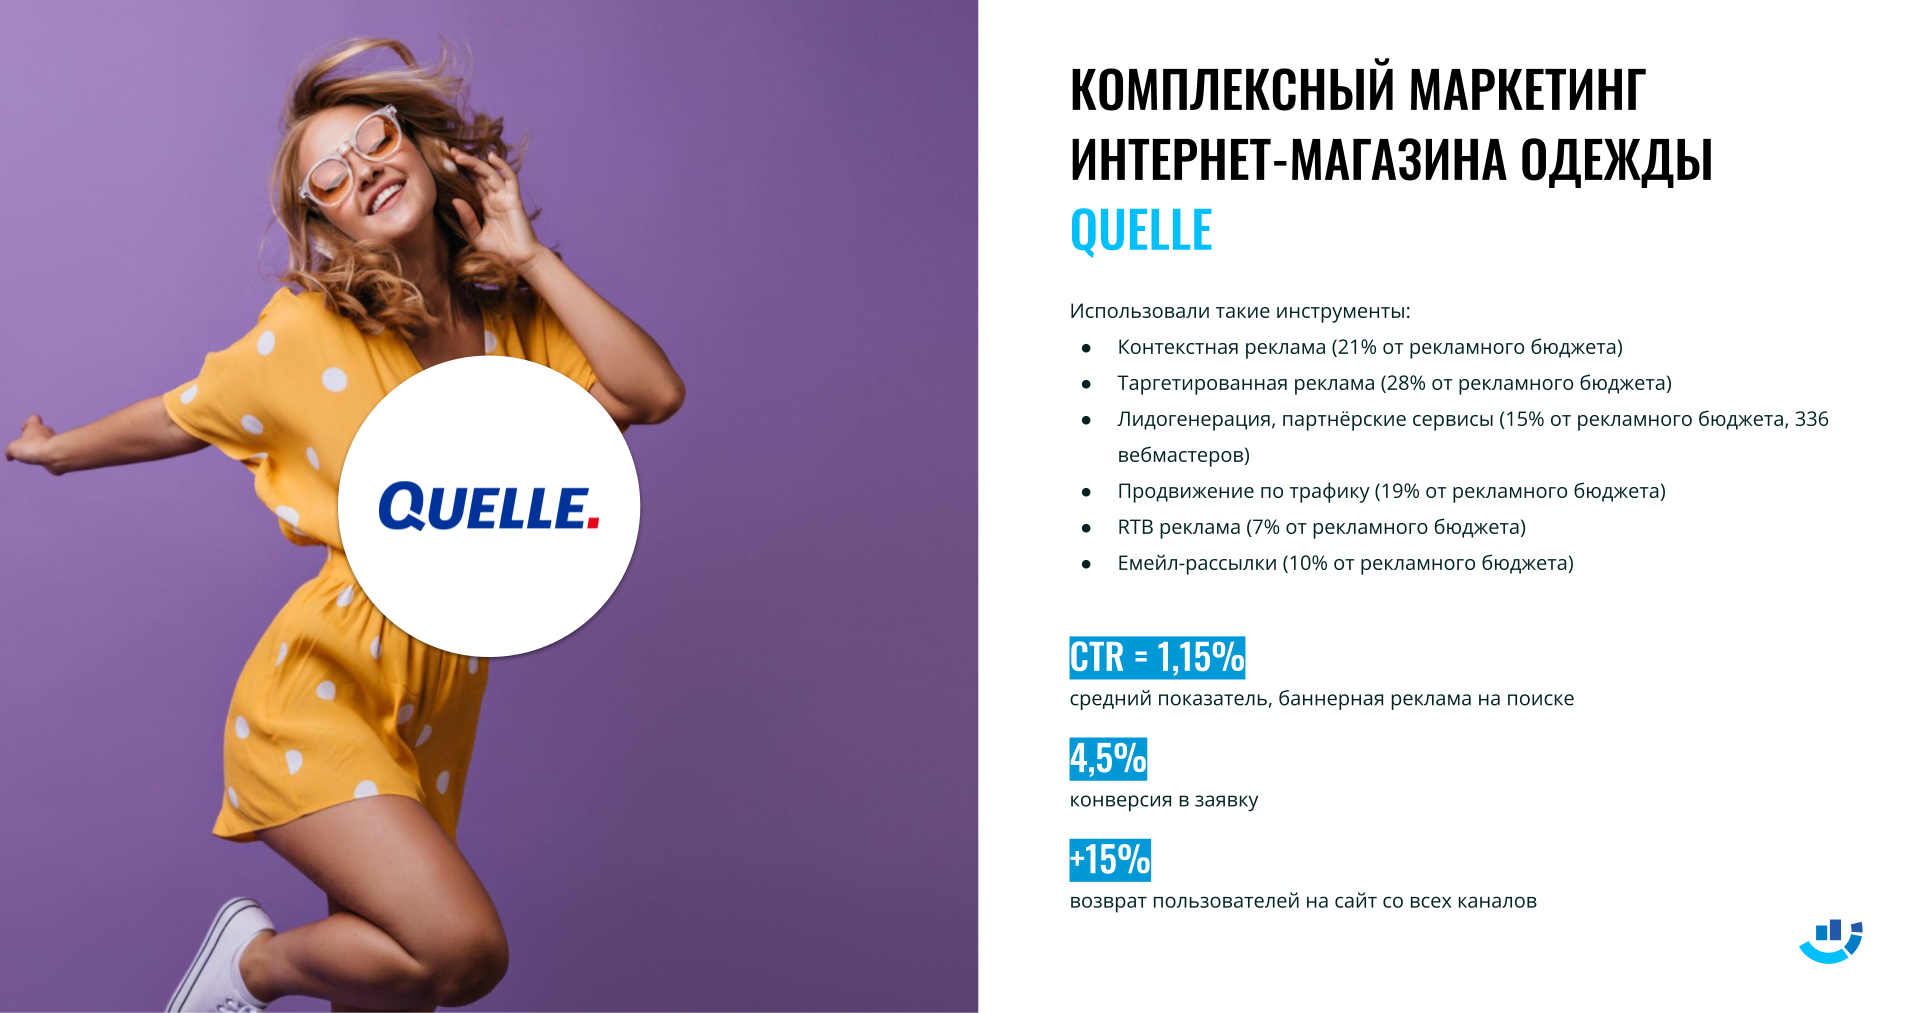 Кейс комплексный маркетинг для интернет-магазина Quelle. Интернет-реклама для ниша «Одежда и обувь»